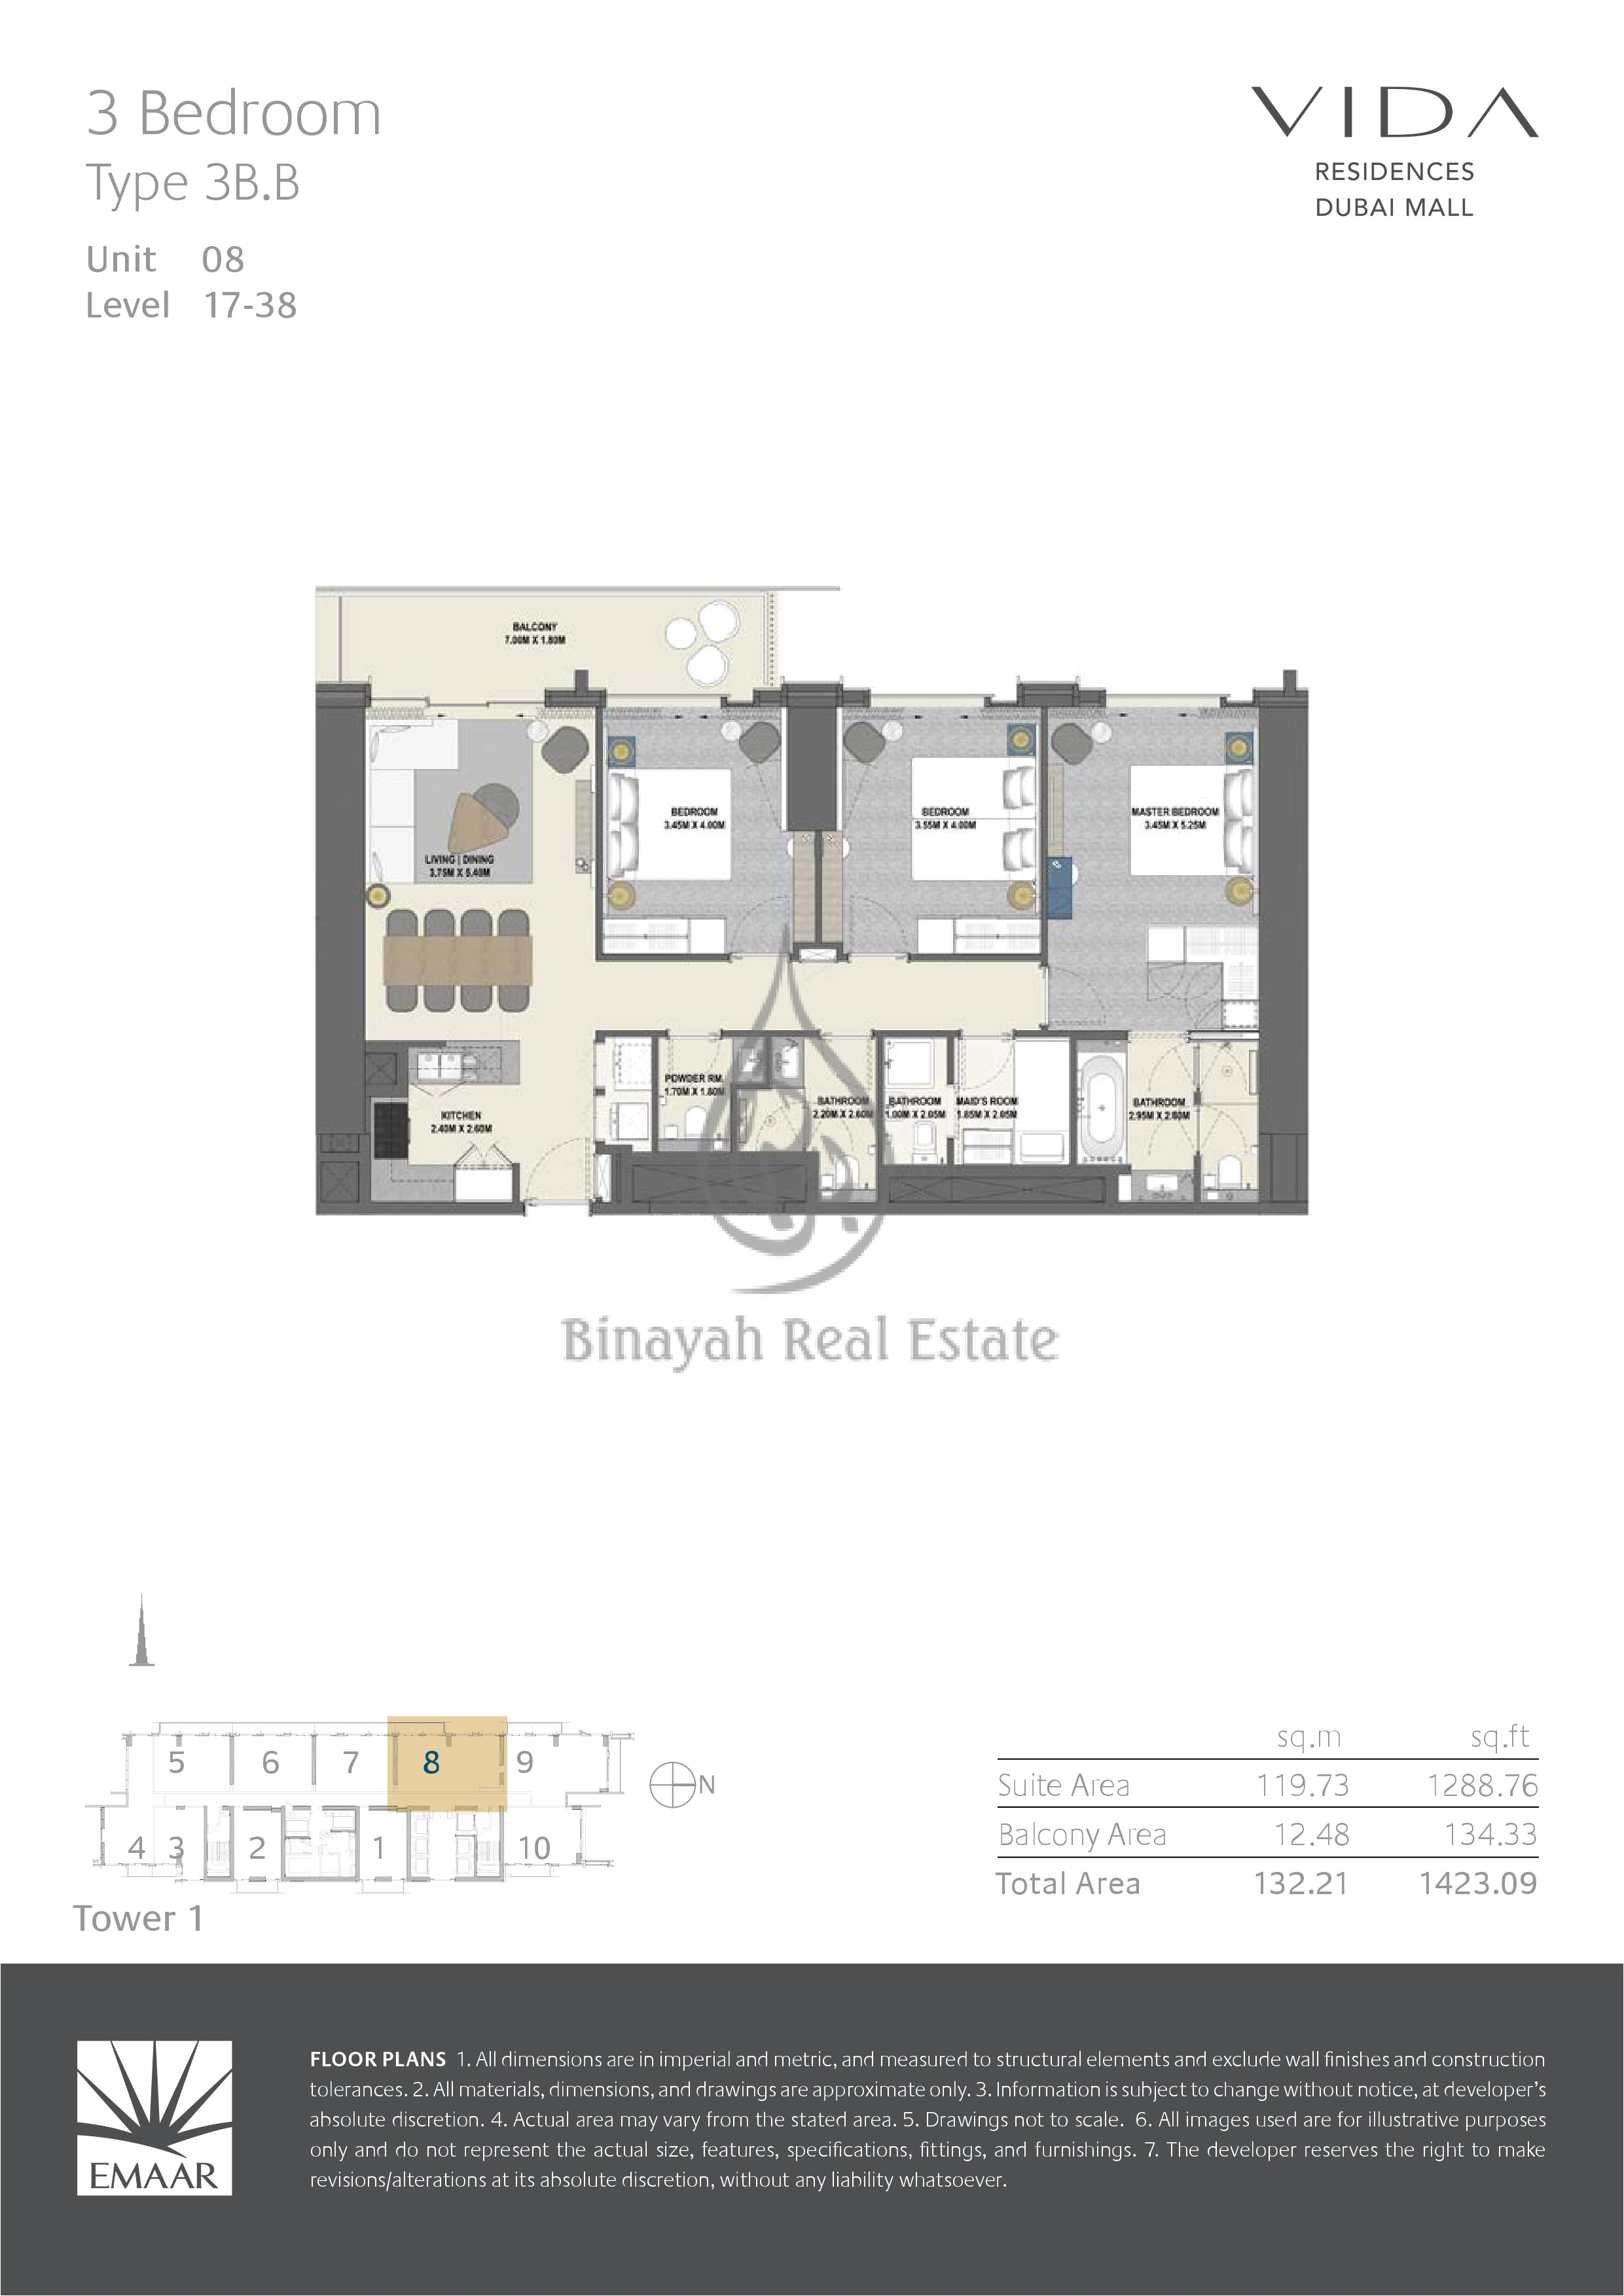 3 bedroom rv floor plan vida residences dubai mall 2 bed type 2b f floor plan